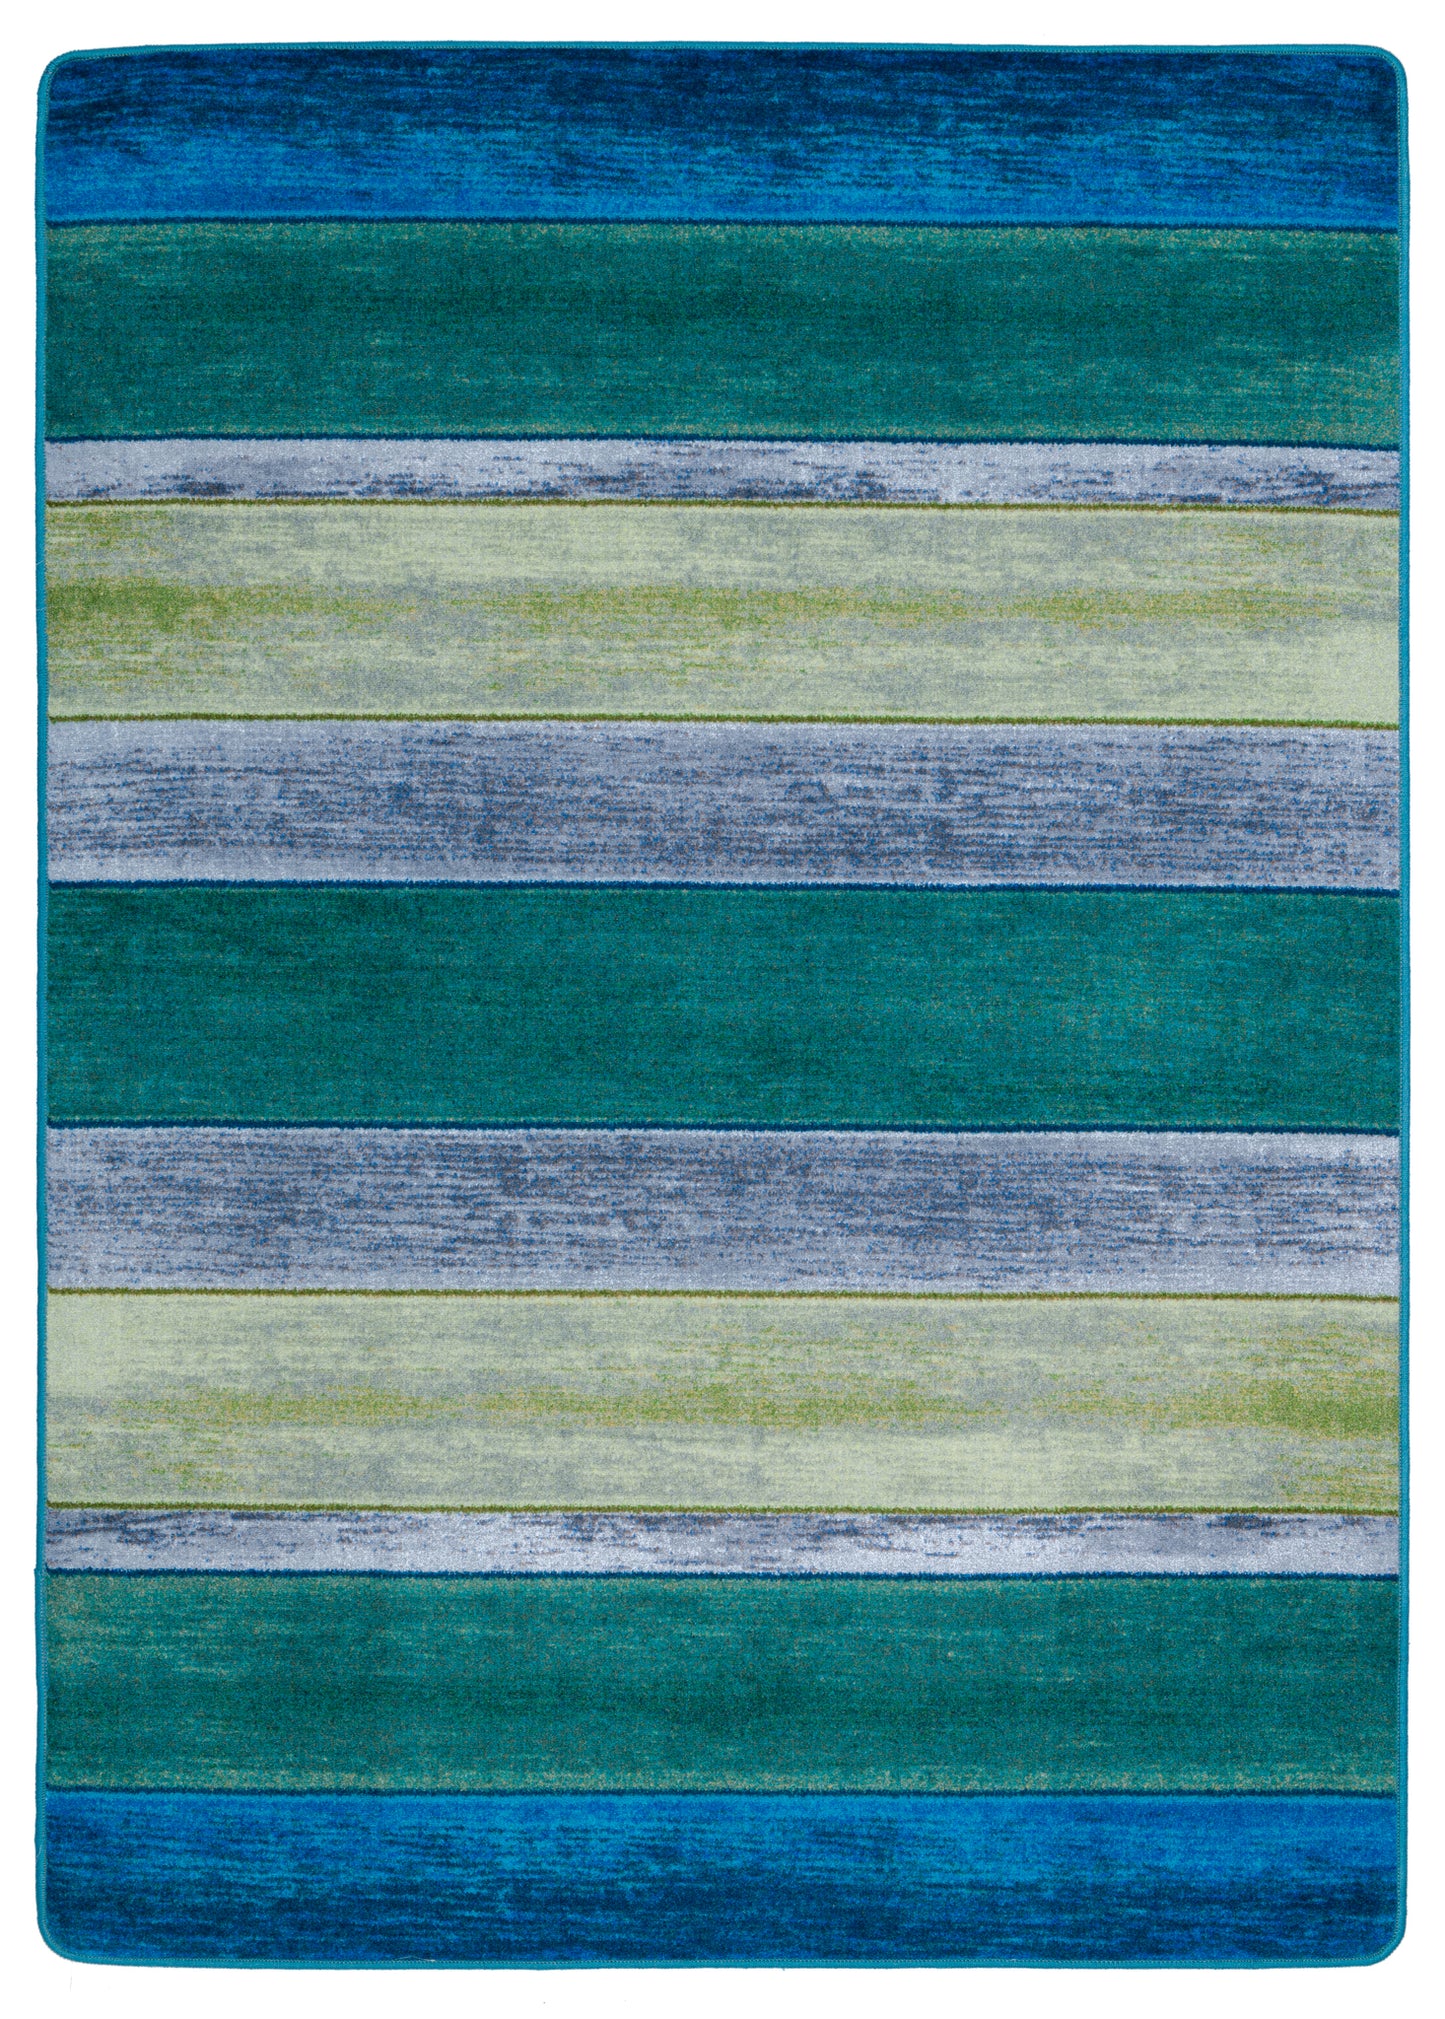 Bungalow Stripe Coastal Rug - Tranquil Aqua & Blue Design